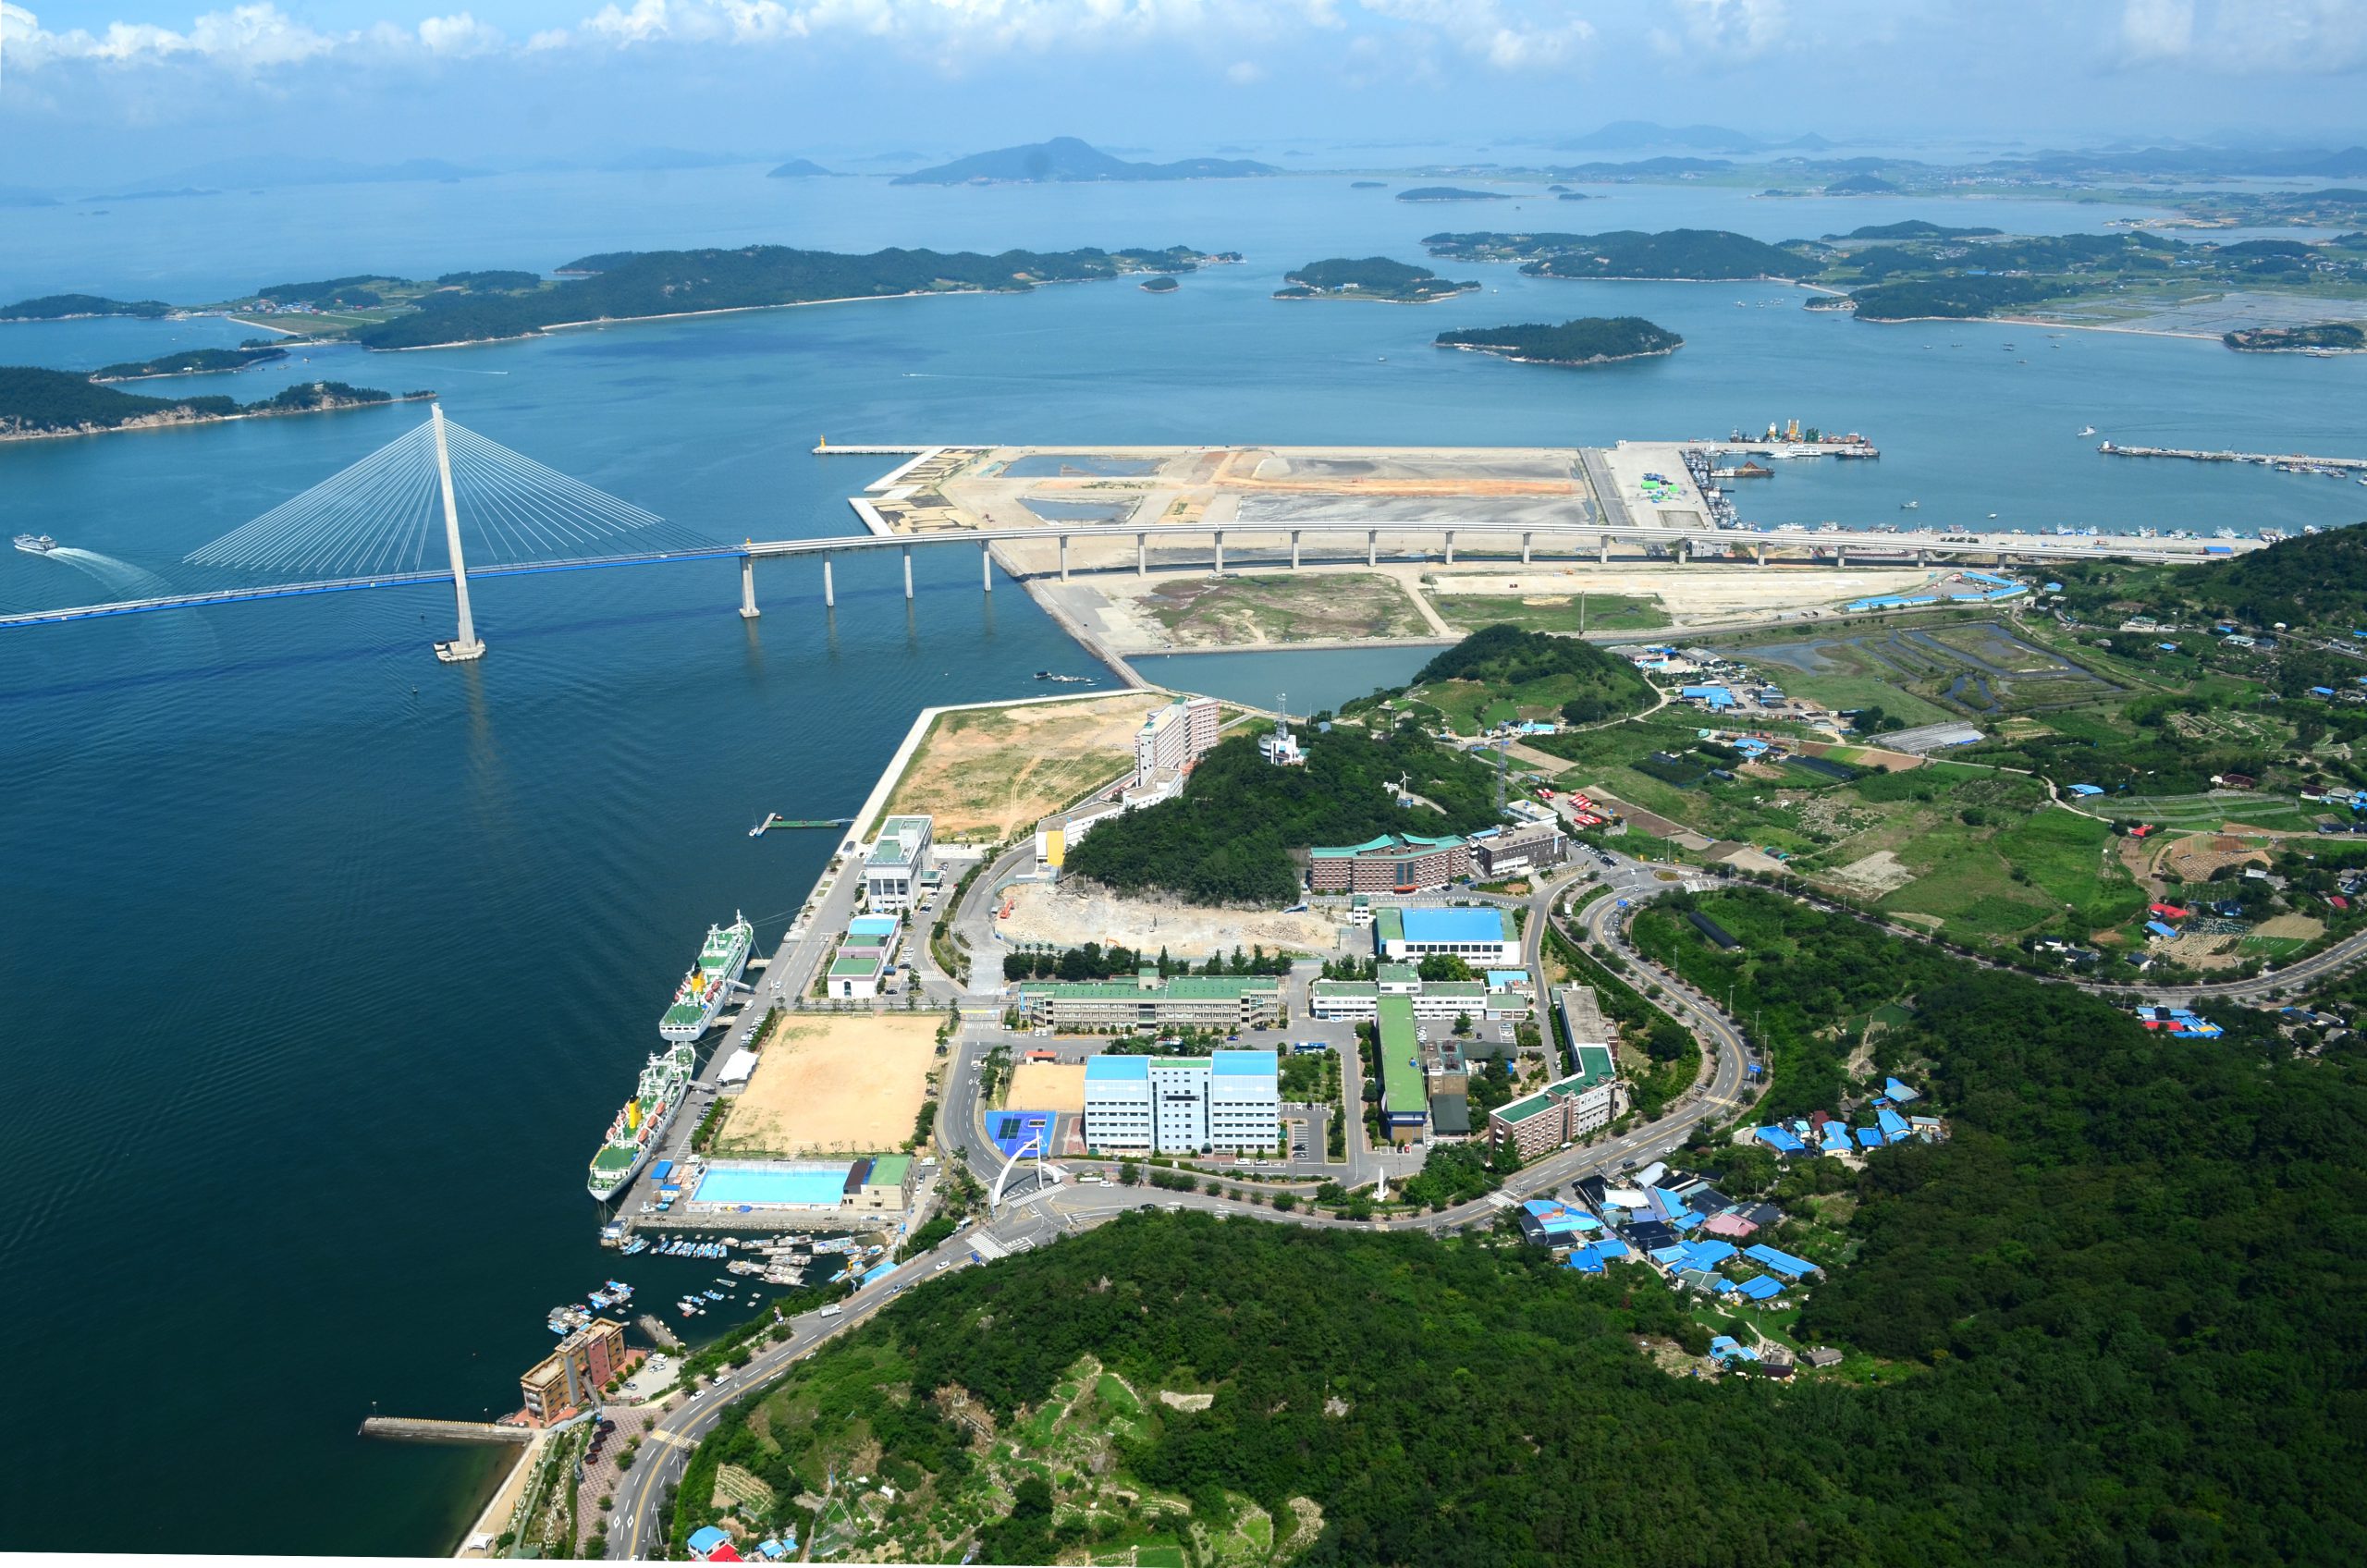 Đại học Quốc gia Hàng hải Mokpo nhìn từ trên không